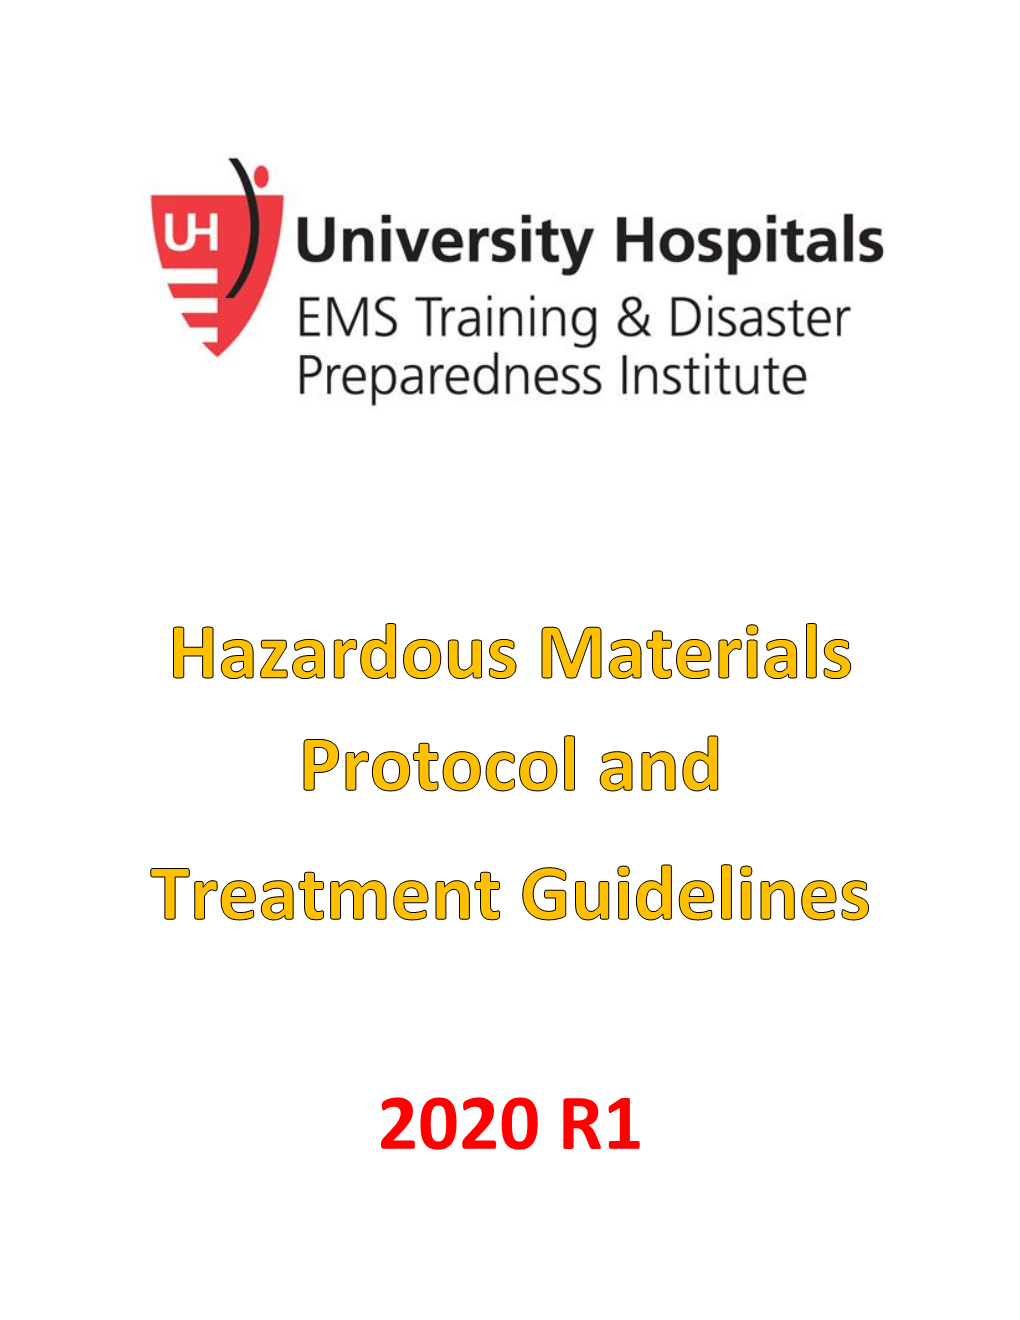 2020 R1 Haz ‐ Mat Protocols